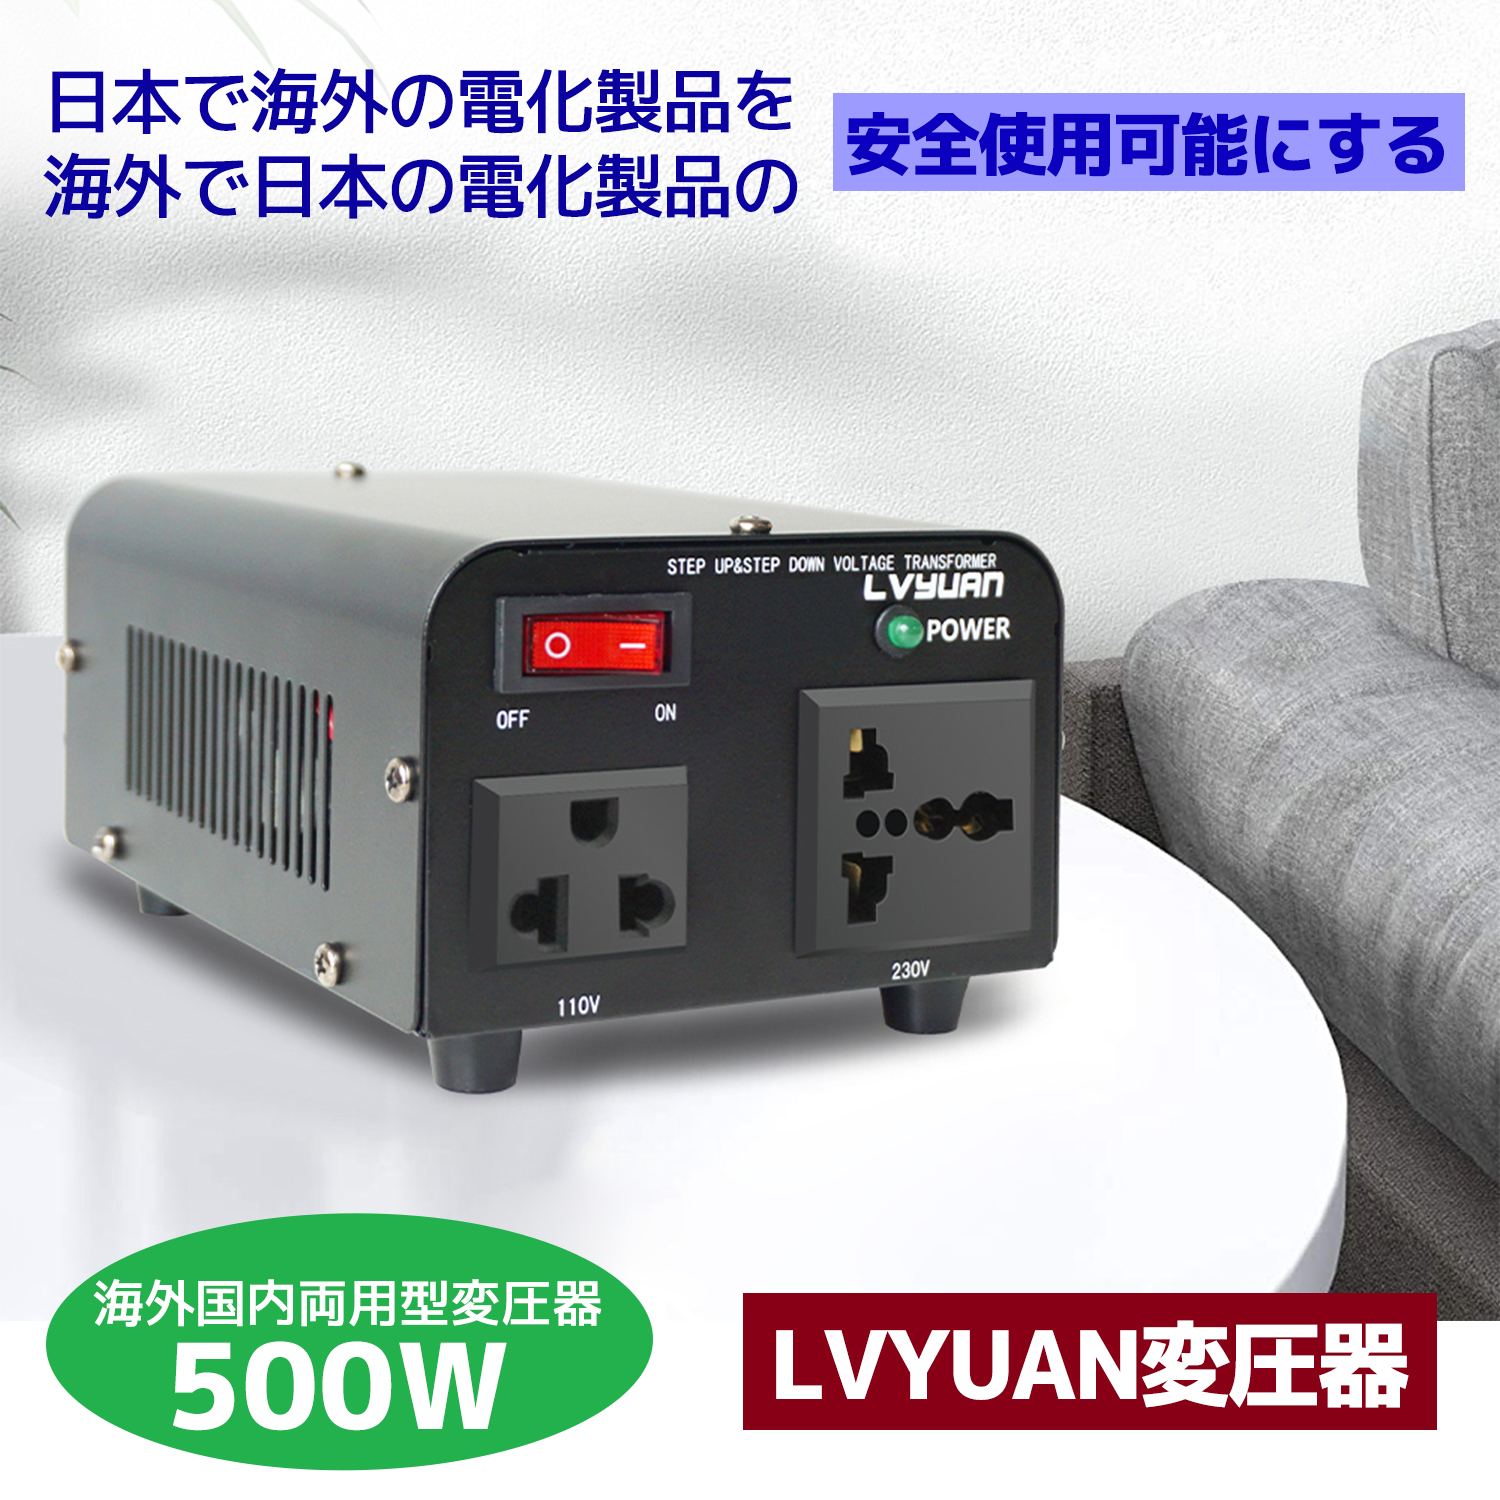 変圧器 500W 安定器 海外国内両用型変圧器 アップトランス ダウントランス 降圧 昇圧兼用型 海外機器対応 100V 110V→220V 240Vに変圧  LVYUAN パーティを彩るご馳走や